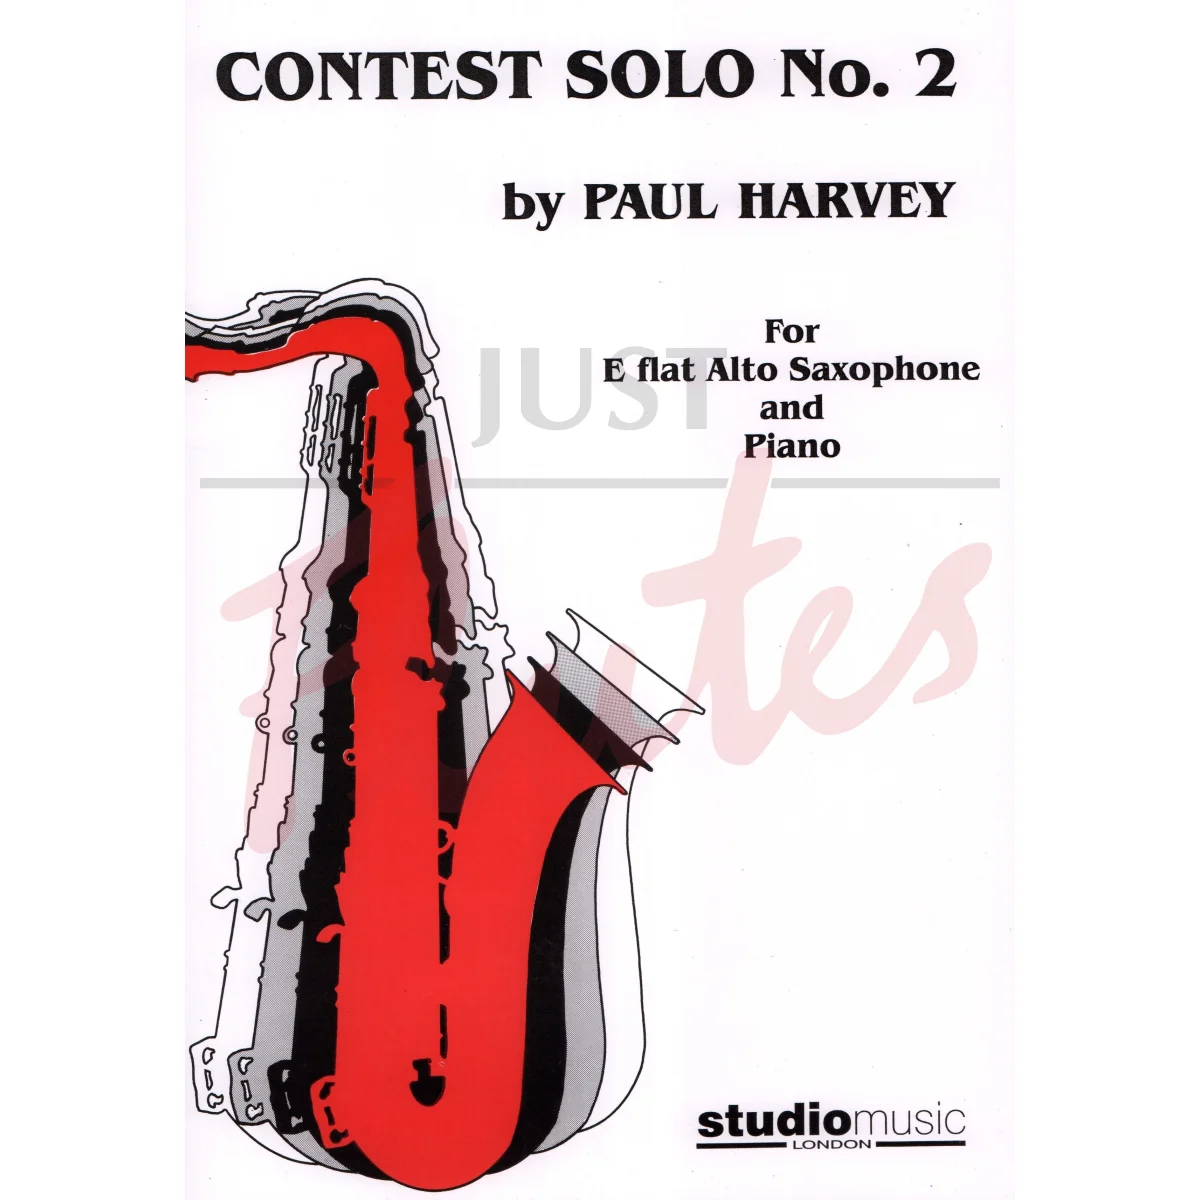 Contest Solo No. 2 for Alto Saxophone and Piano